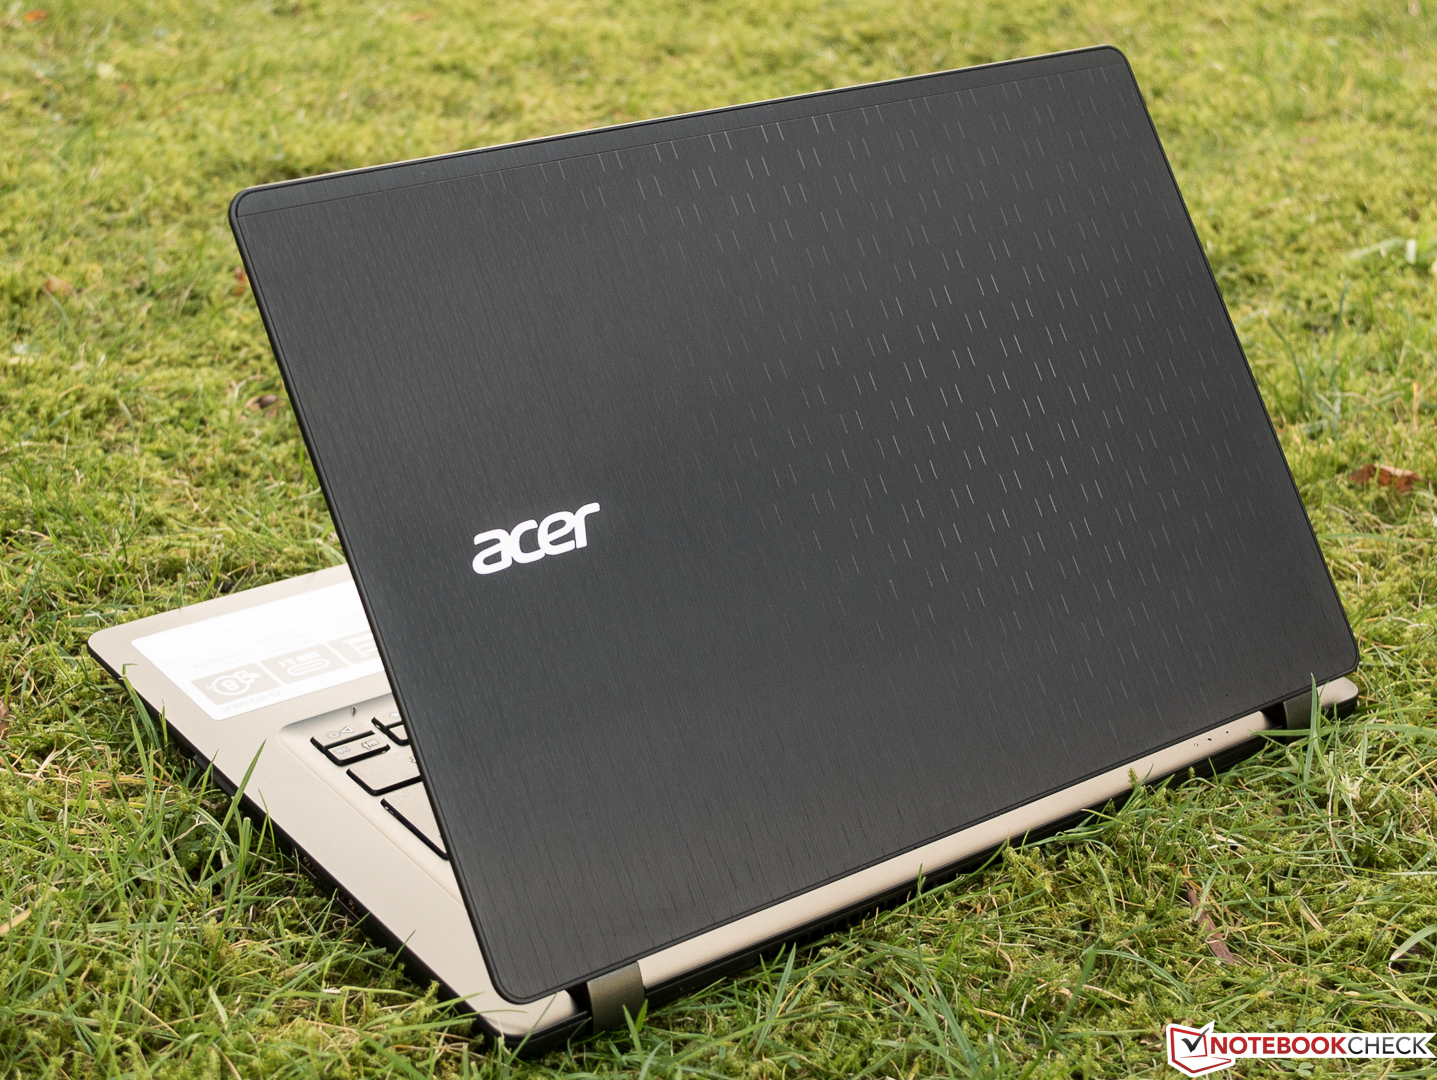 Acer Aspire V3-372 Subnotebook Review - NotebookCheck.net Reviews